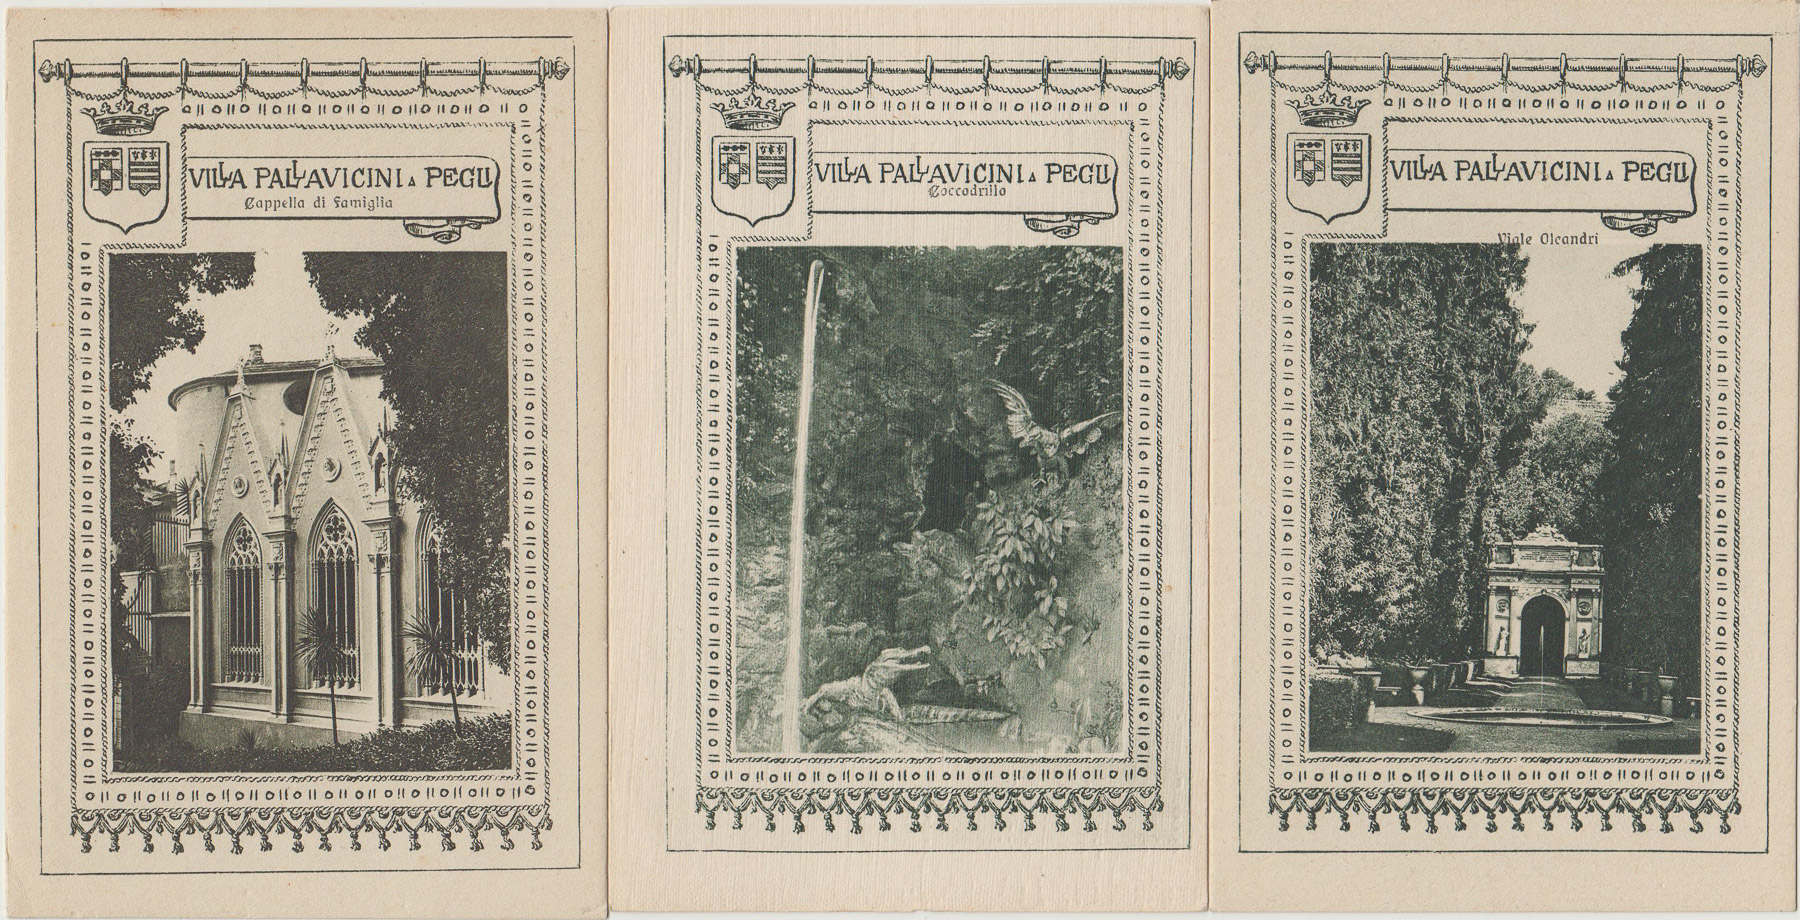 Cartoline della villa - Franco Boggero